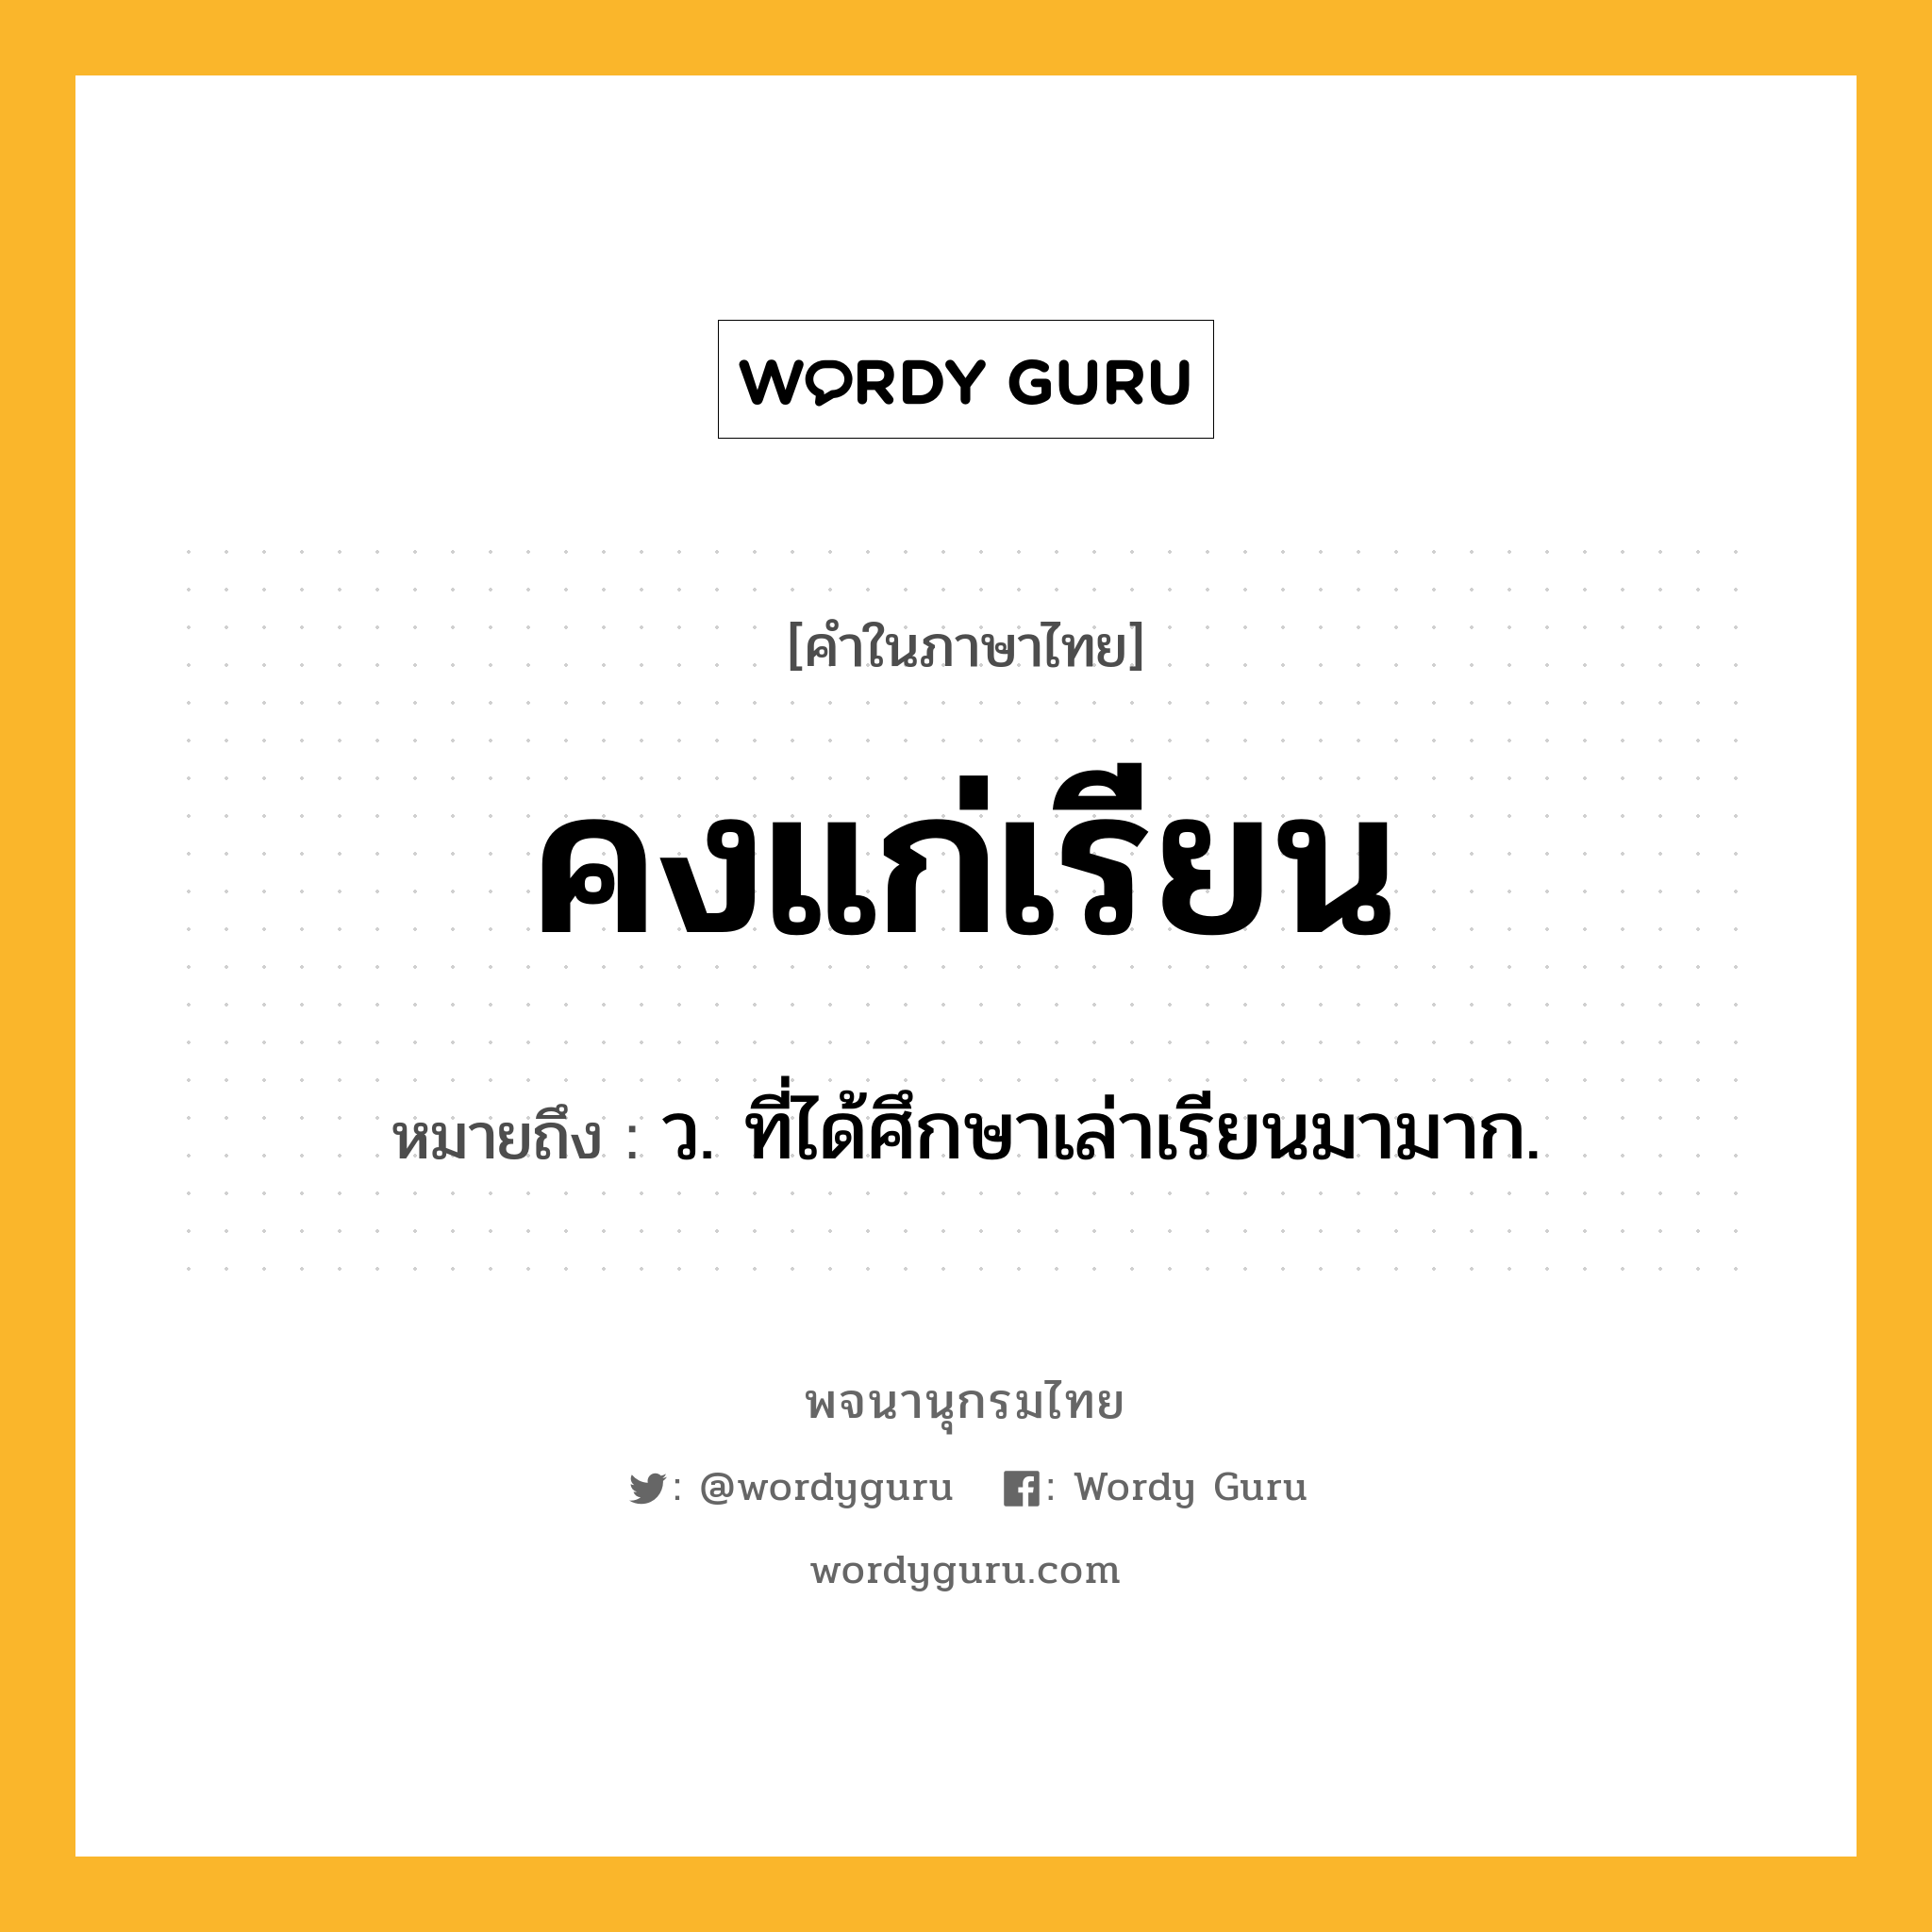 คงแก่เรียน ความหมาย หมายถึงอะไร?, คำในภาษาไทย คงแก่เรียน หมายถึง ว. ที่ได้ศึกษาเล่าเรียนมามาก.